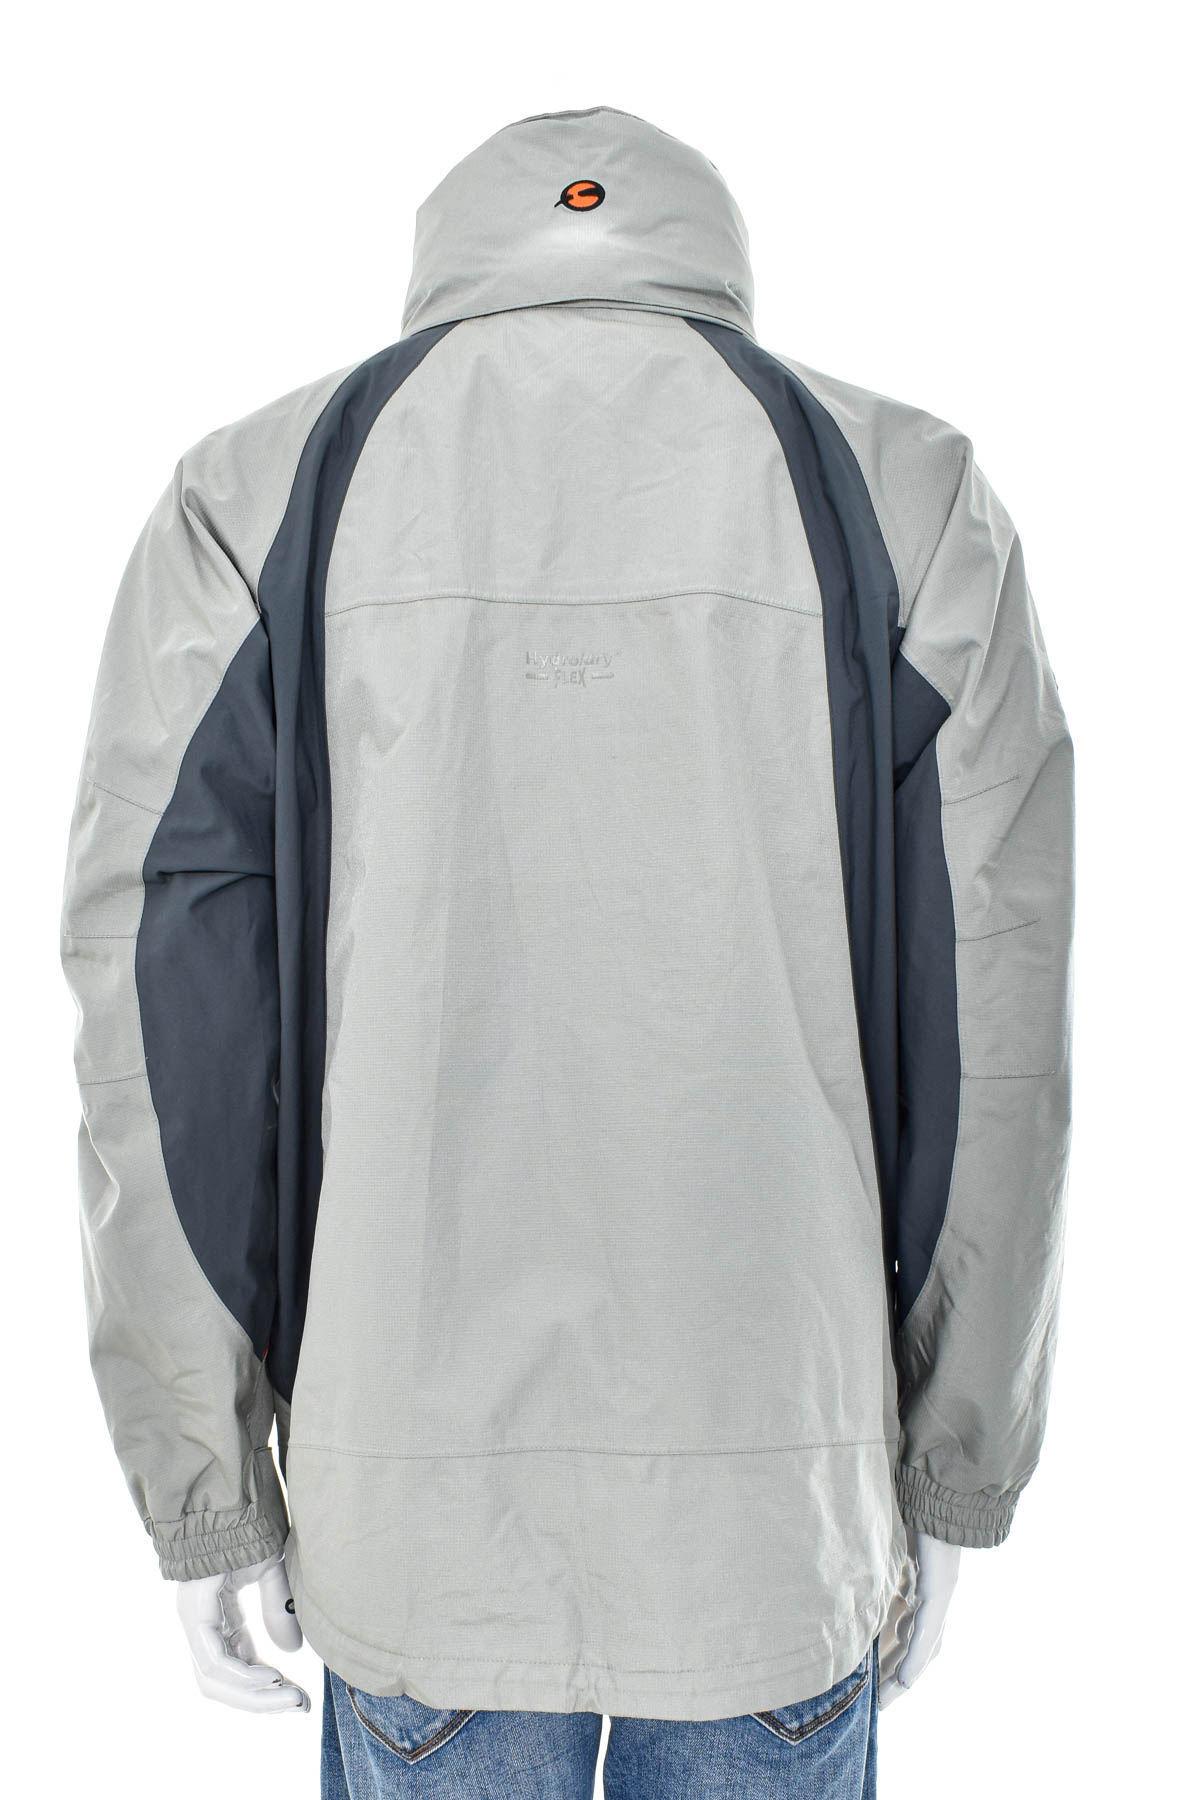 Men's jacket - Sprayway - 1